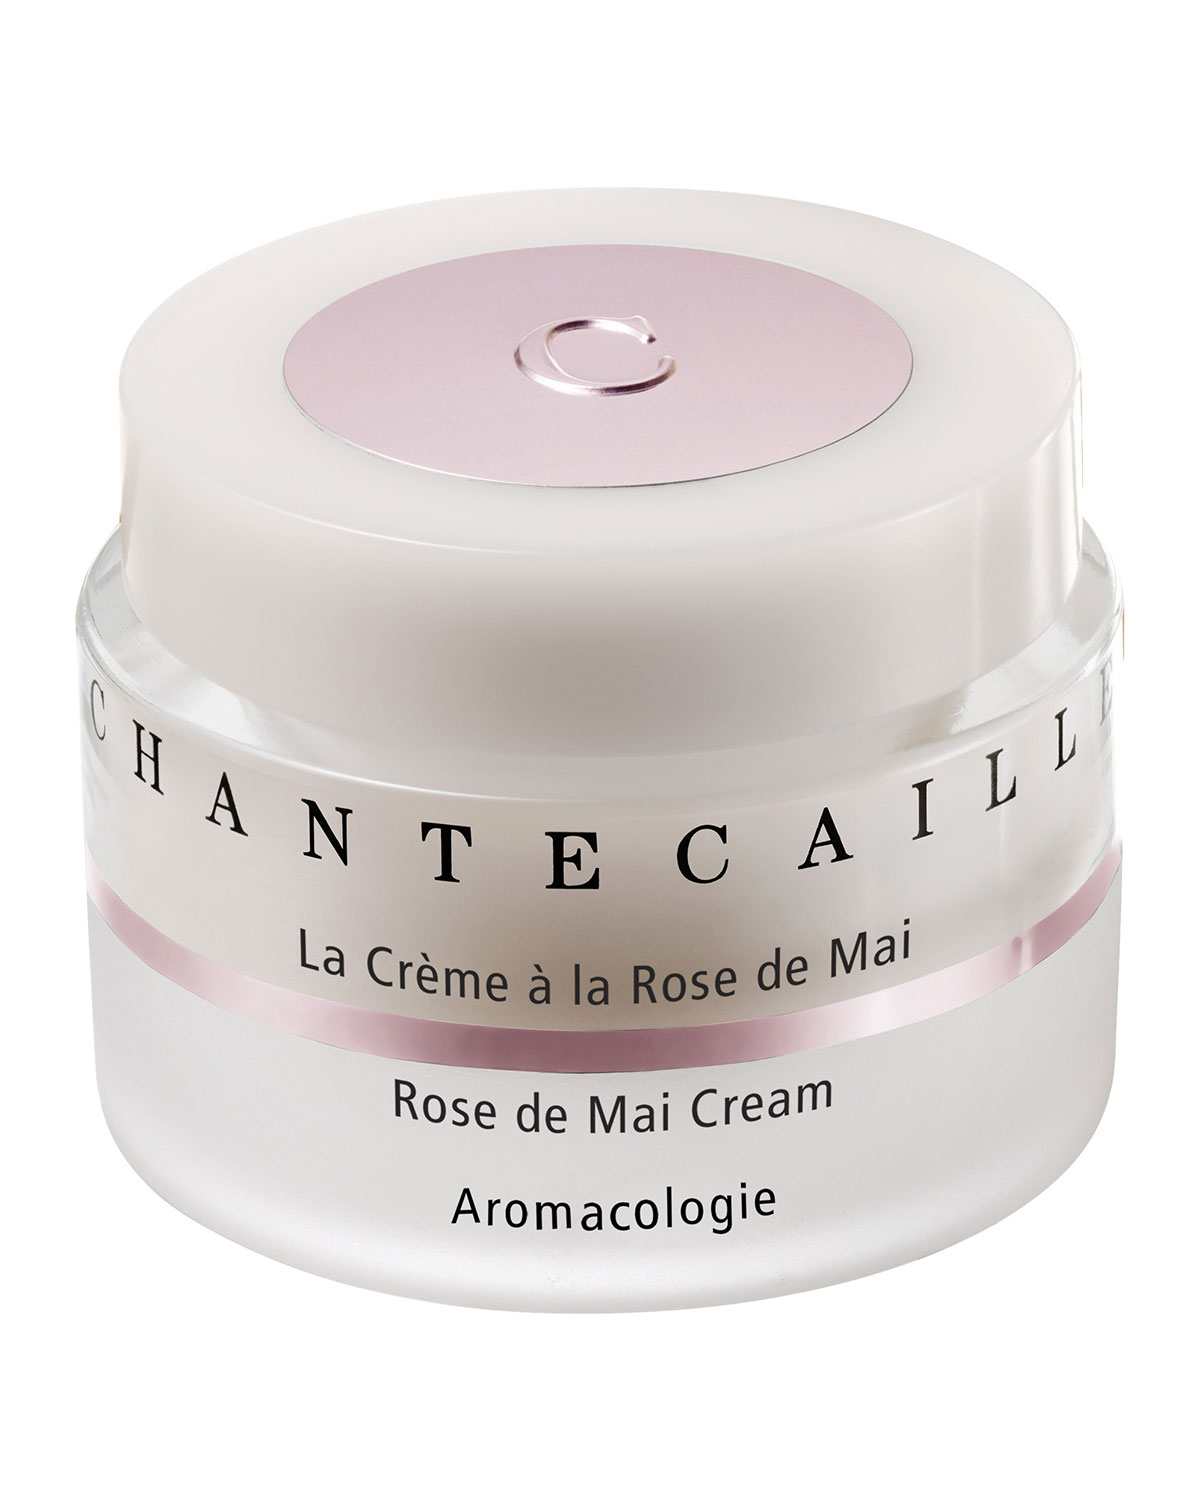 Chantecaille ROSE DE MAI CREAM, 1.7 OZ./ 50 ML